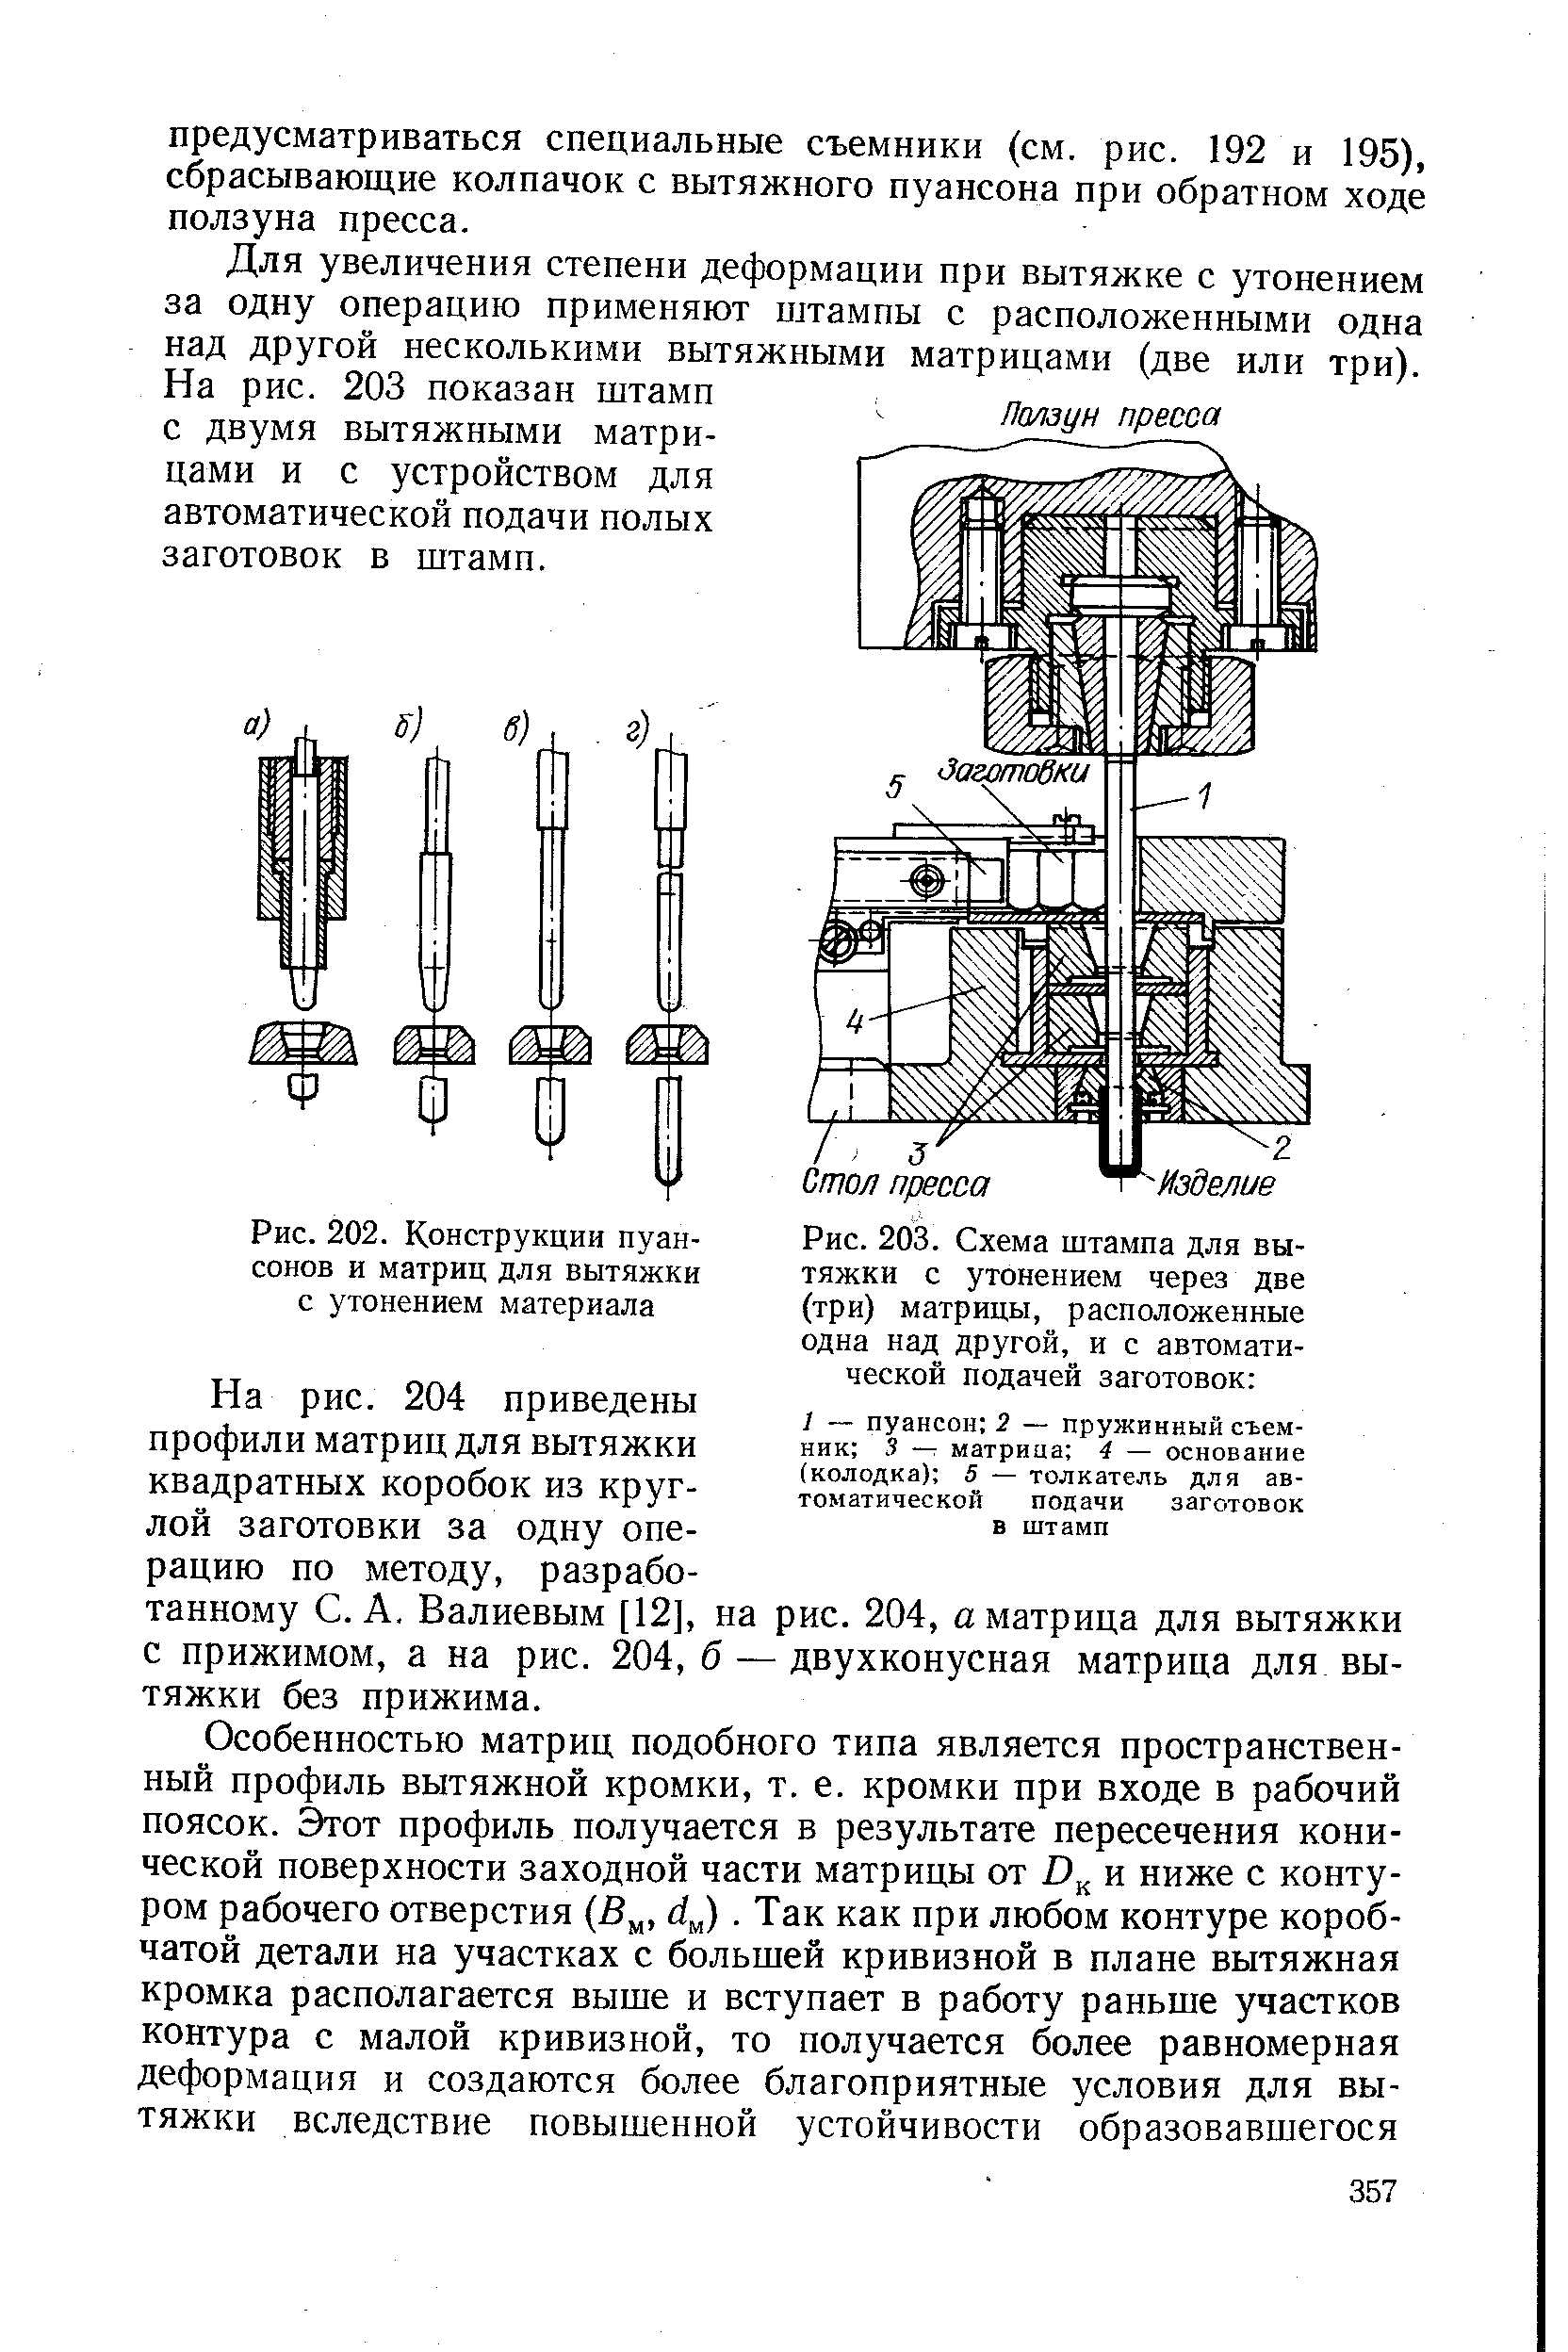 Рис. 203. Схема штампа для вытяжки с утонением через две (три) матрицы, расположенные одна над другой, и с автоматической подачей заготовок 
